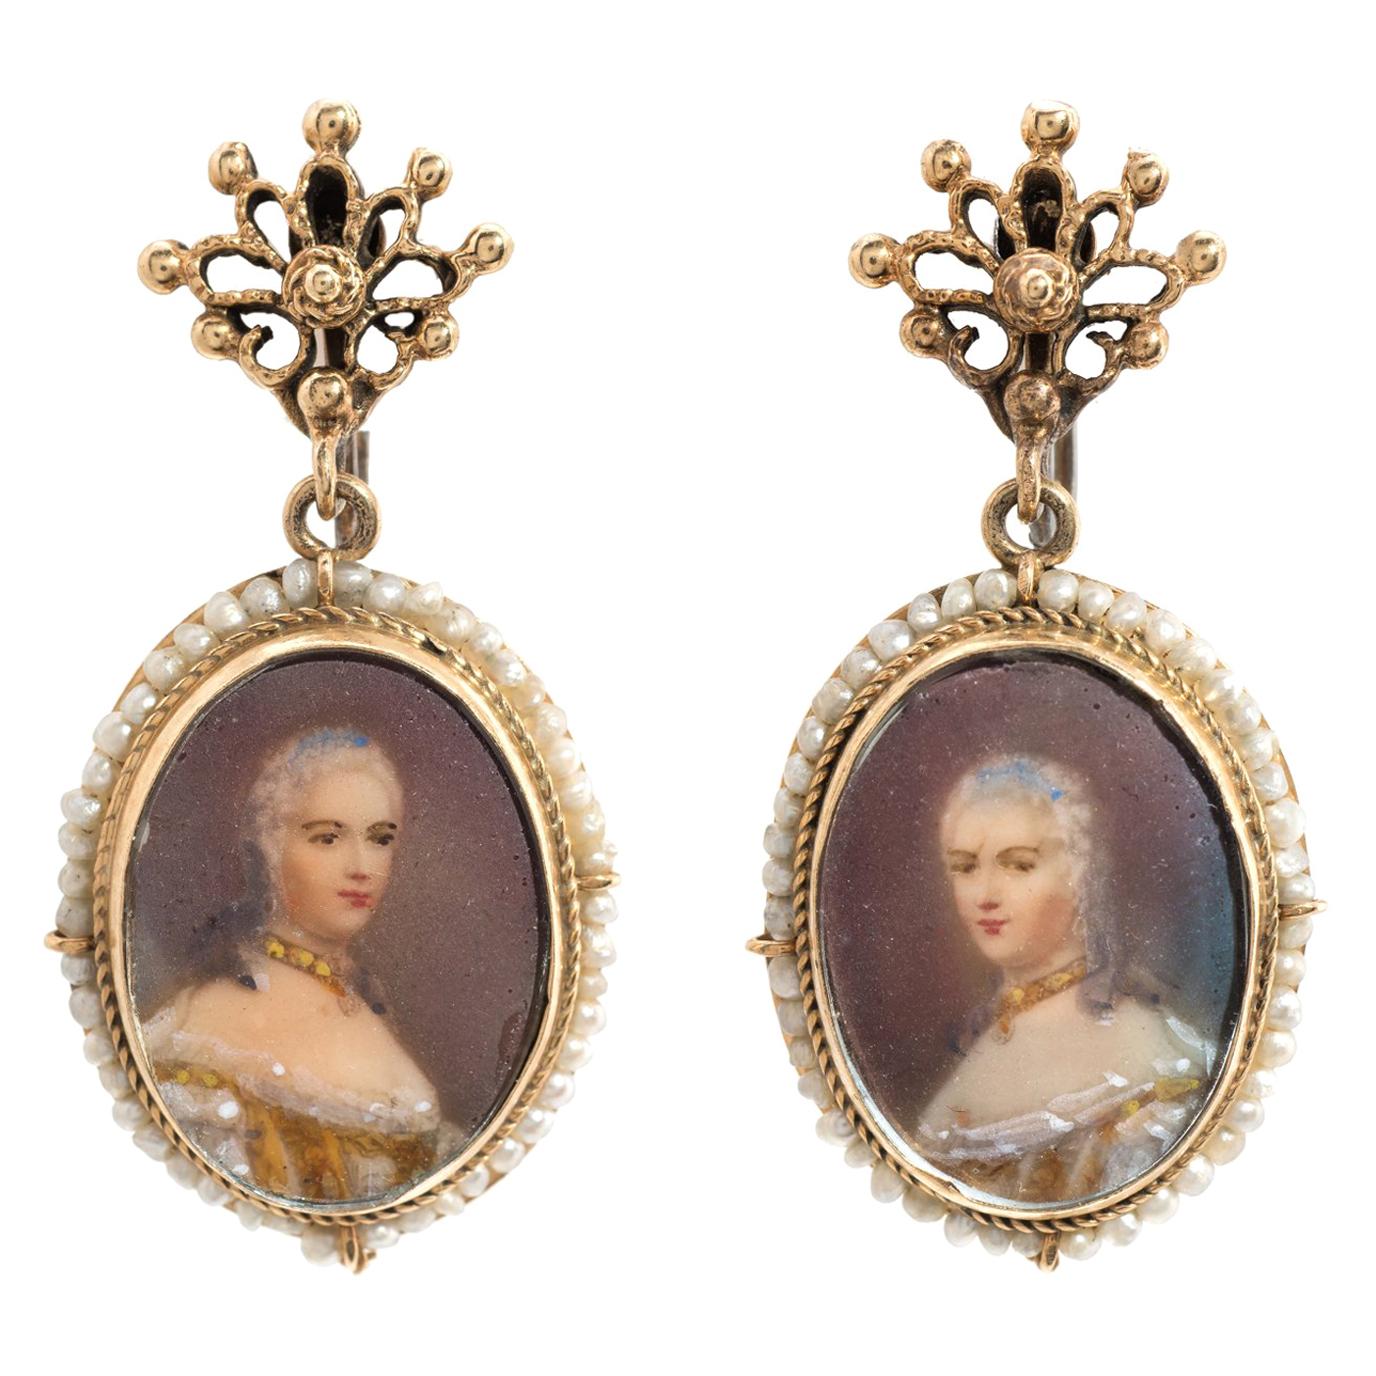 Vintage Portrait Earrings 14 Karat Gold Drops Estate Fine Jewelry Seed Pearls